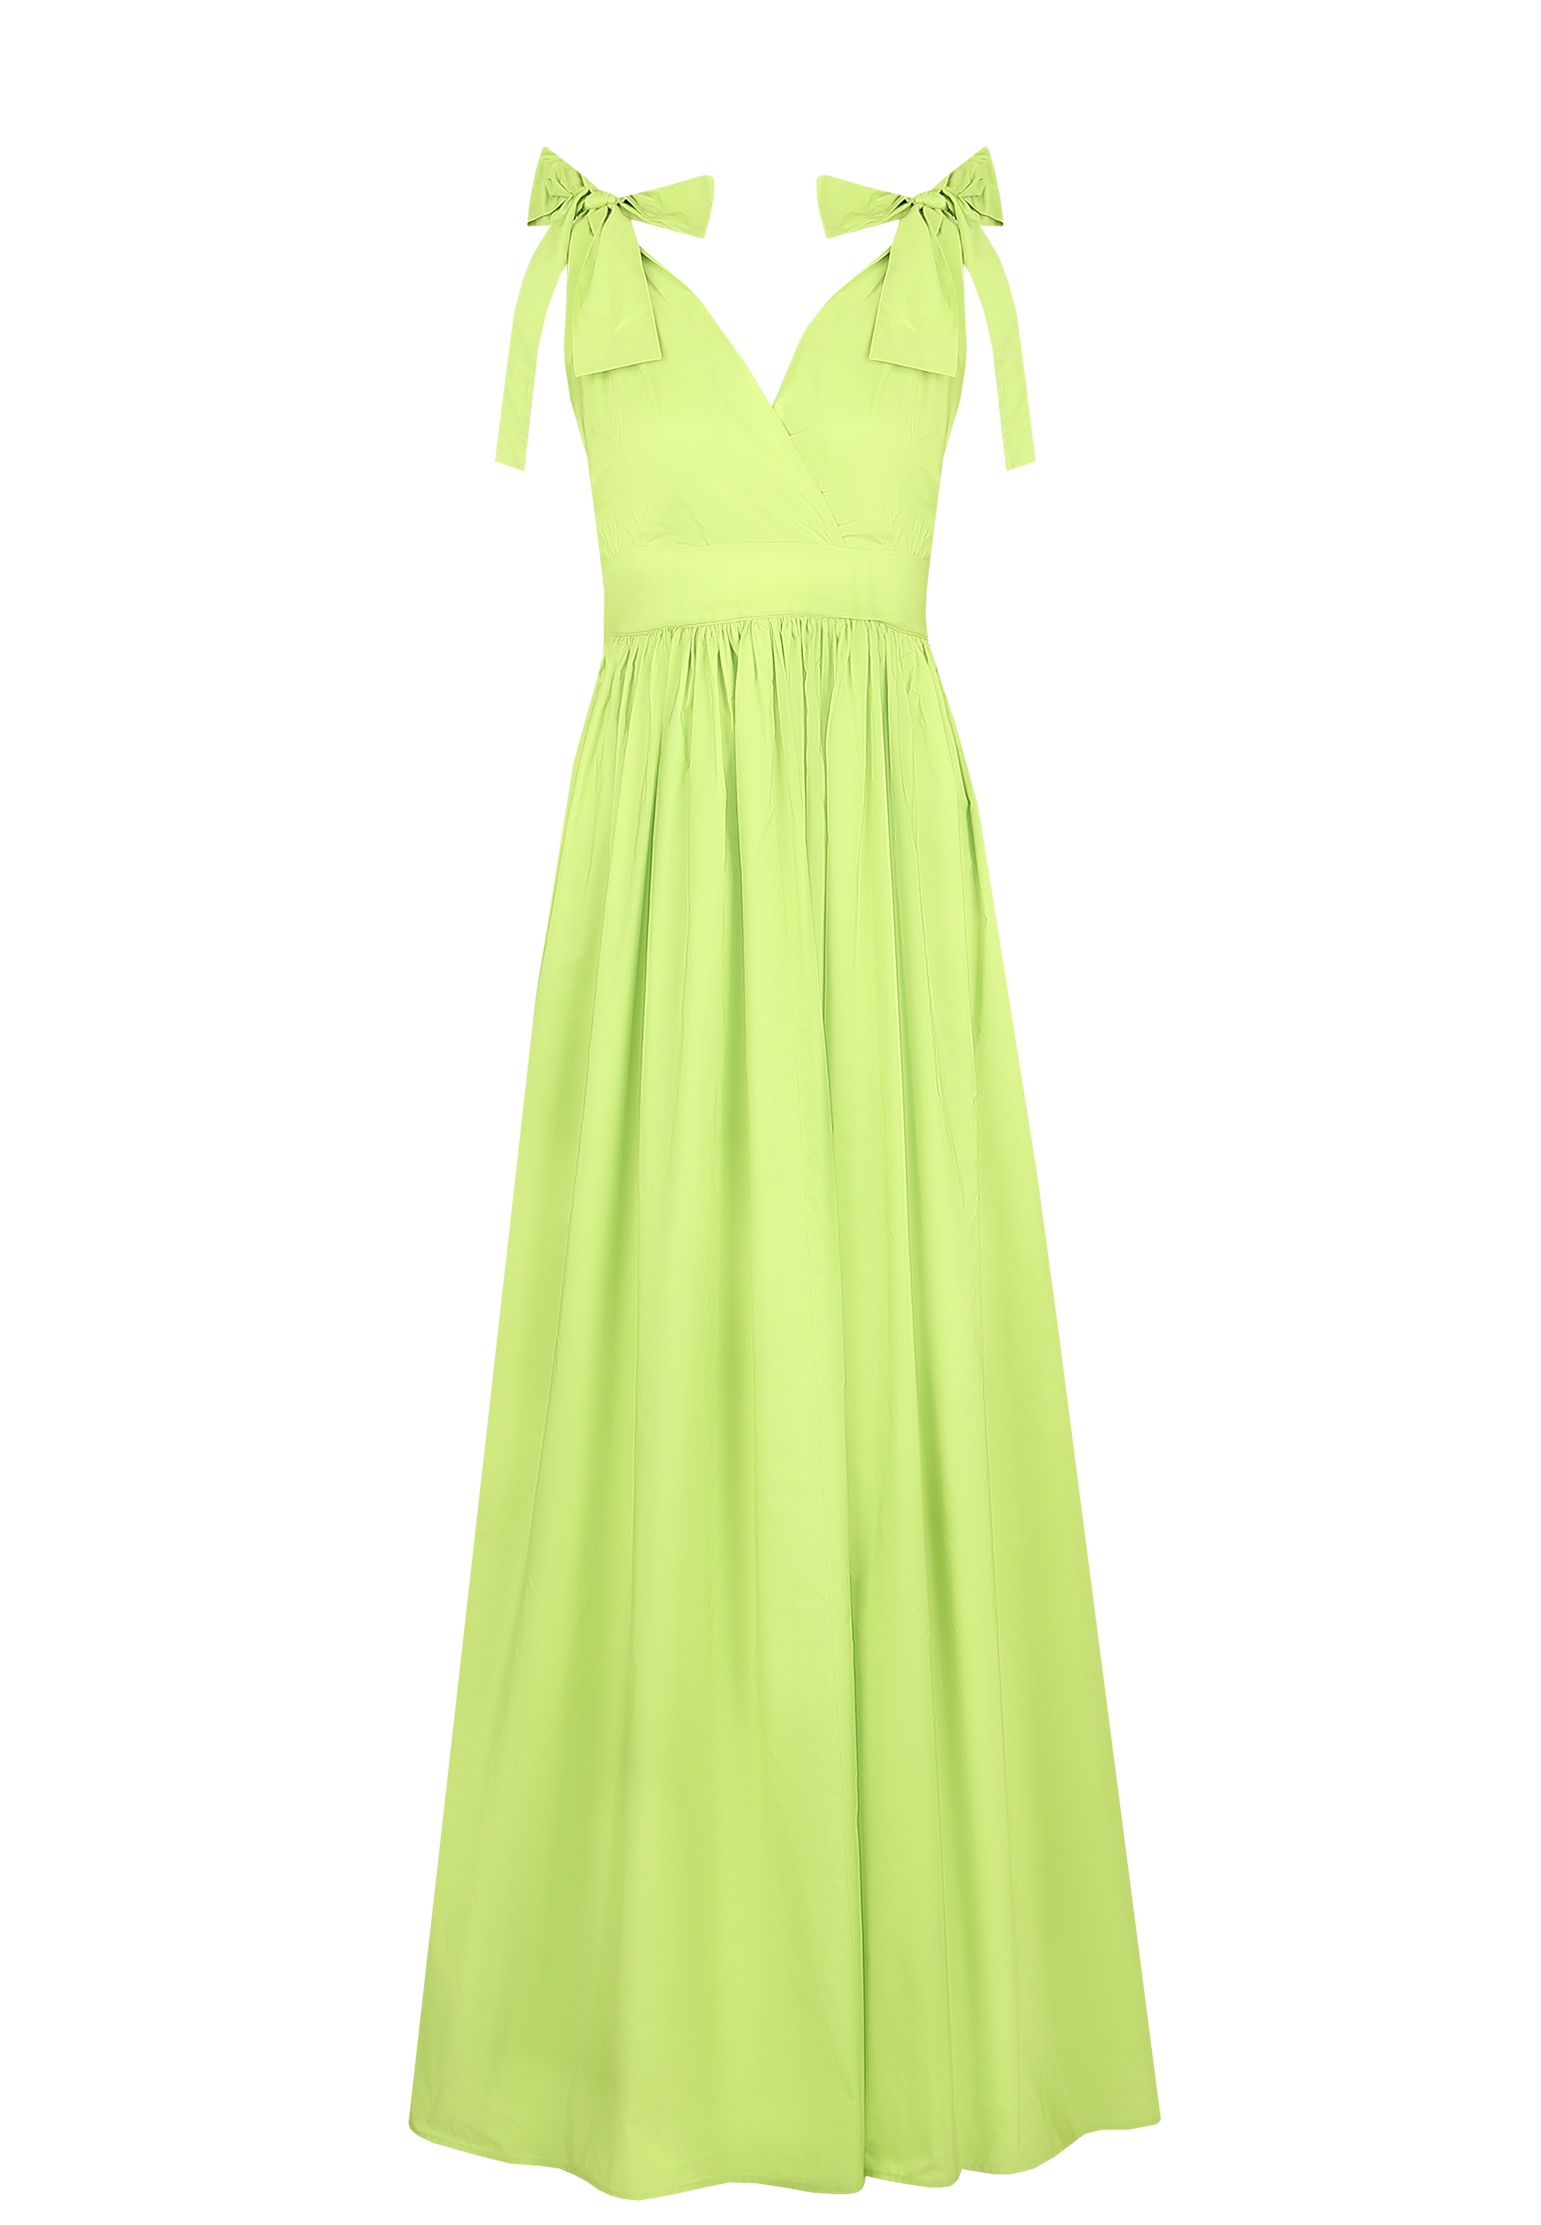 Платье женское Maison Co.go 142910 зеленое 40 IT